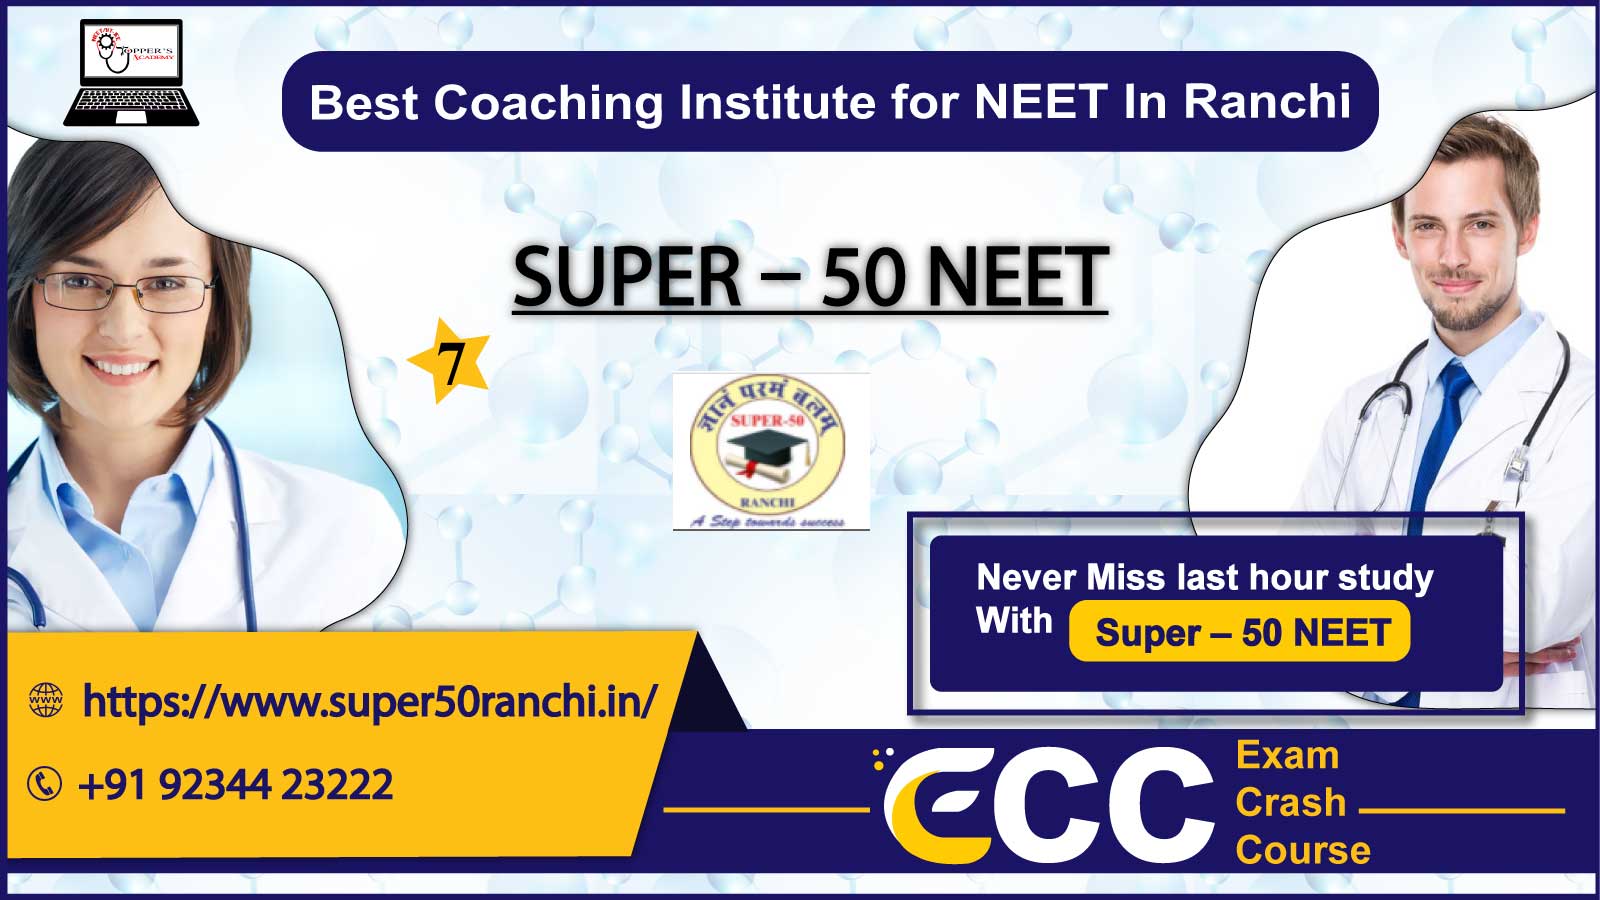 Super 50 NEET Coaching in Ranchi